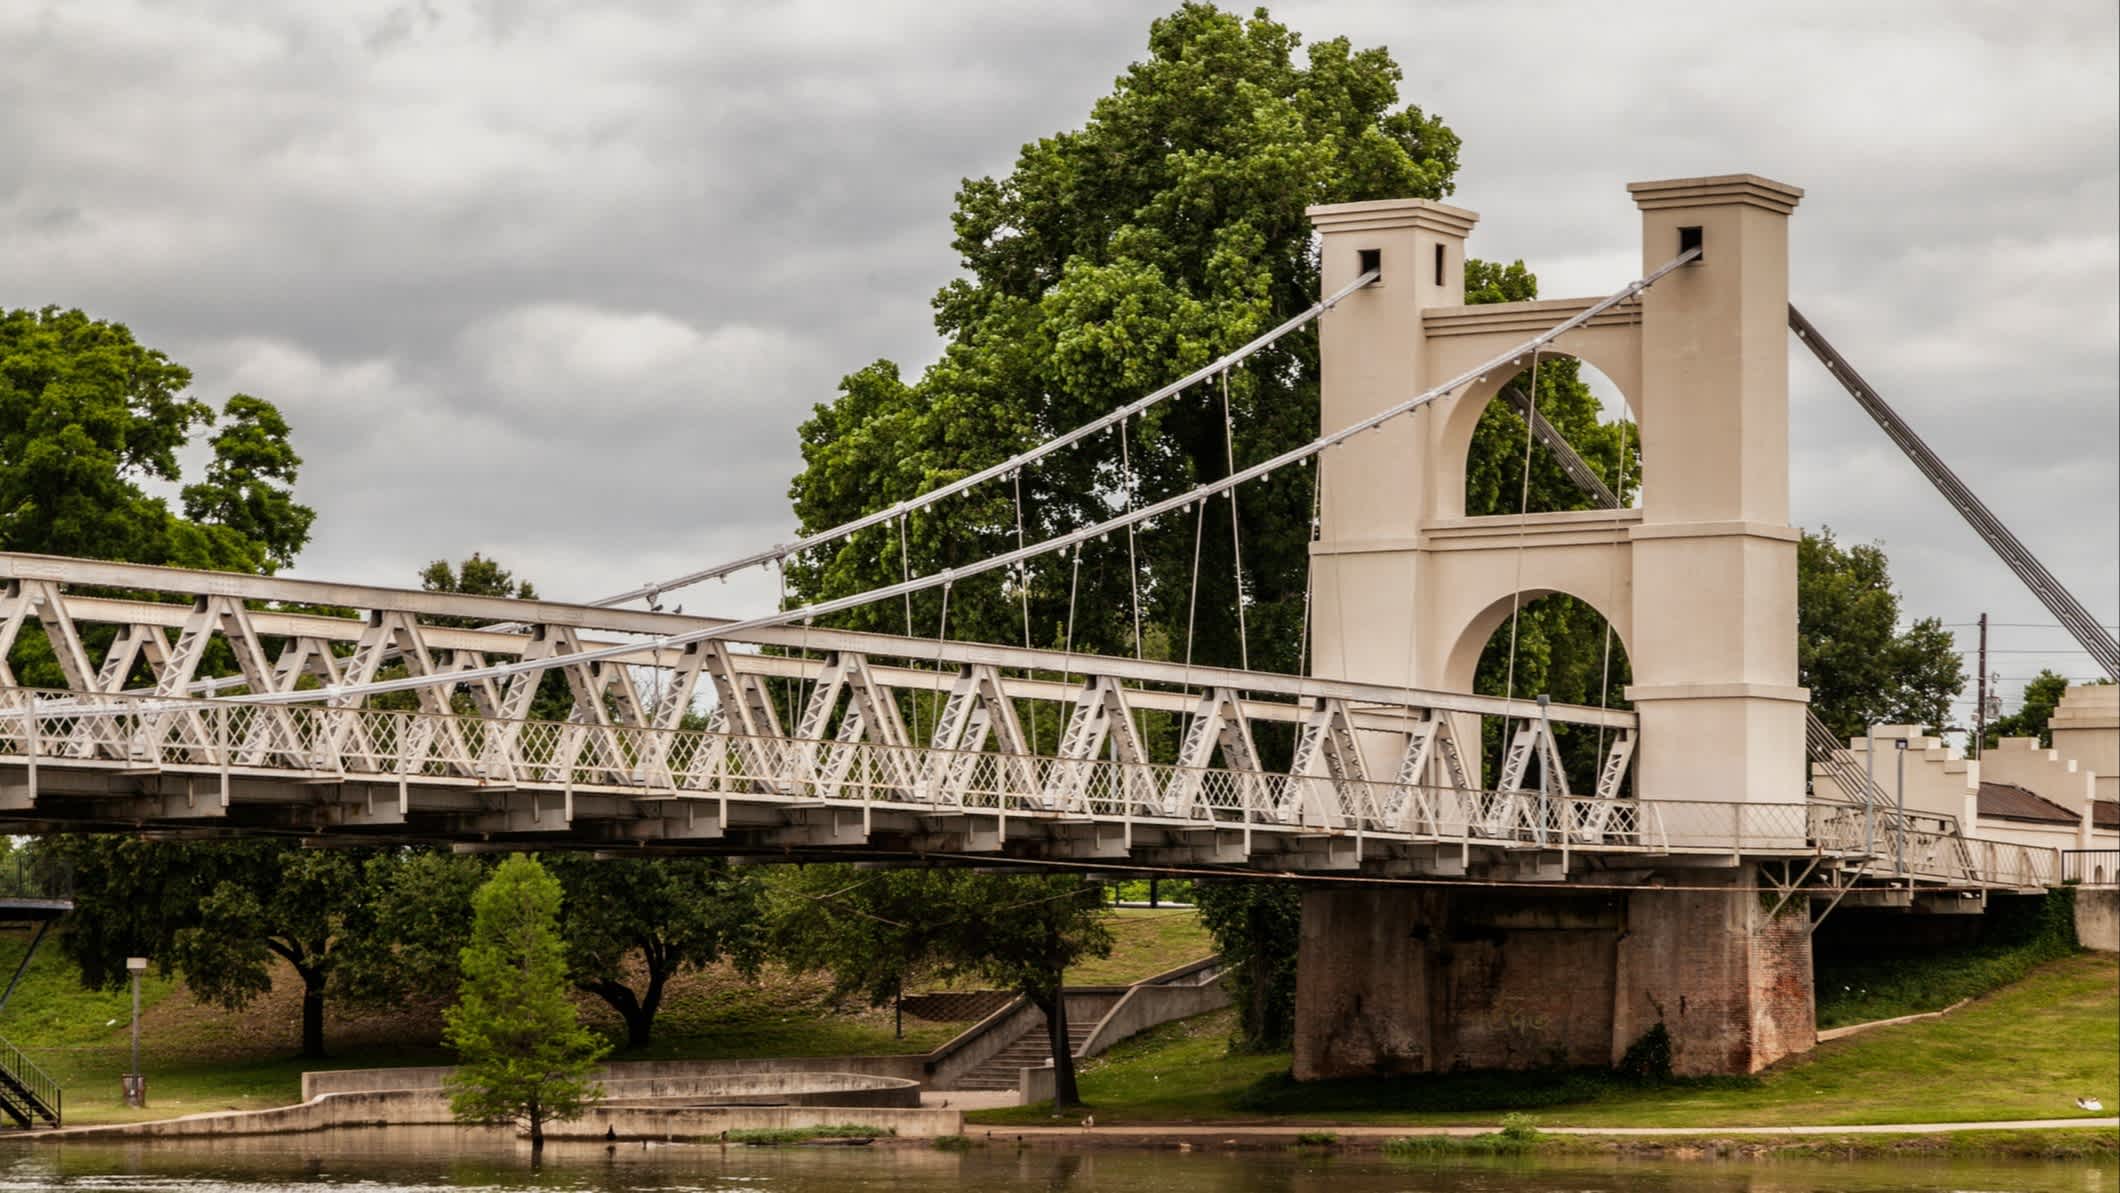 Hängebrücke von Waco über den Brazos River Texas, USA
